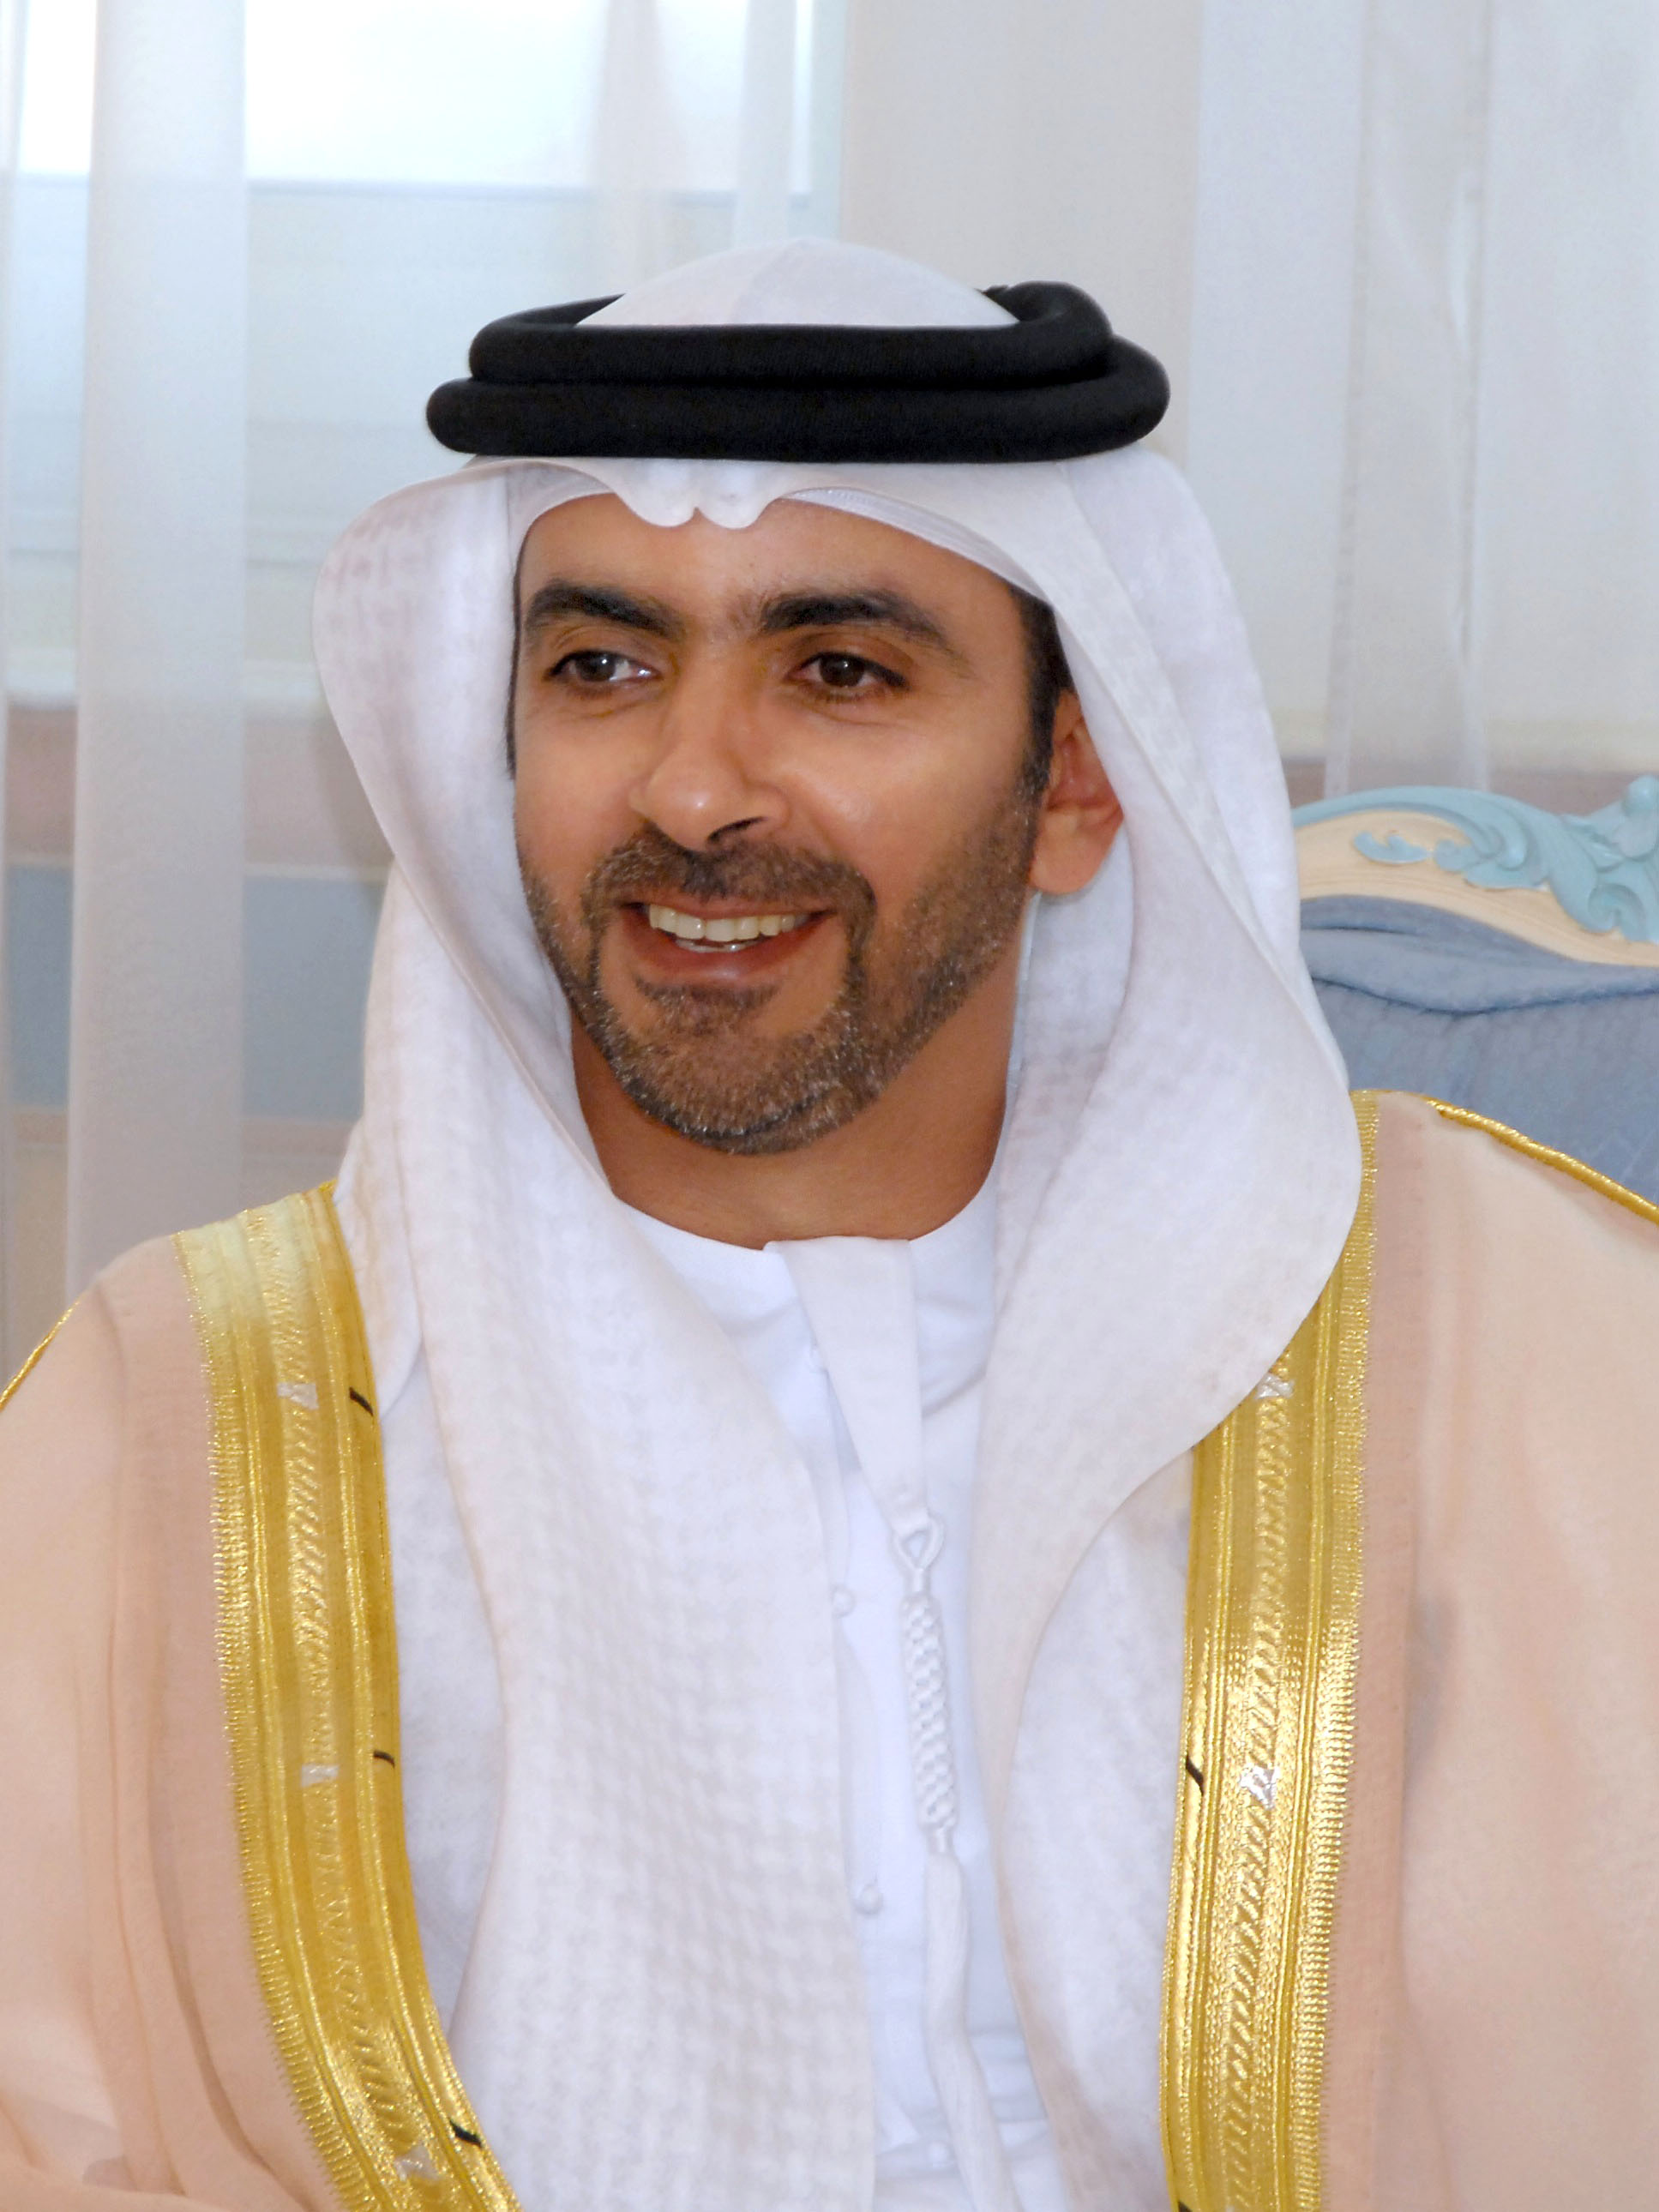 Sheikh Saif bin Zayed Al Nahyan